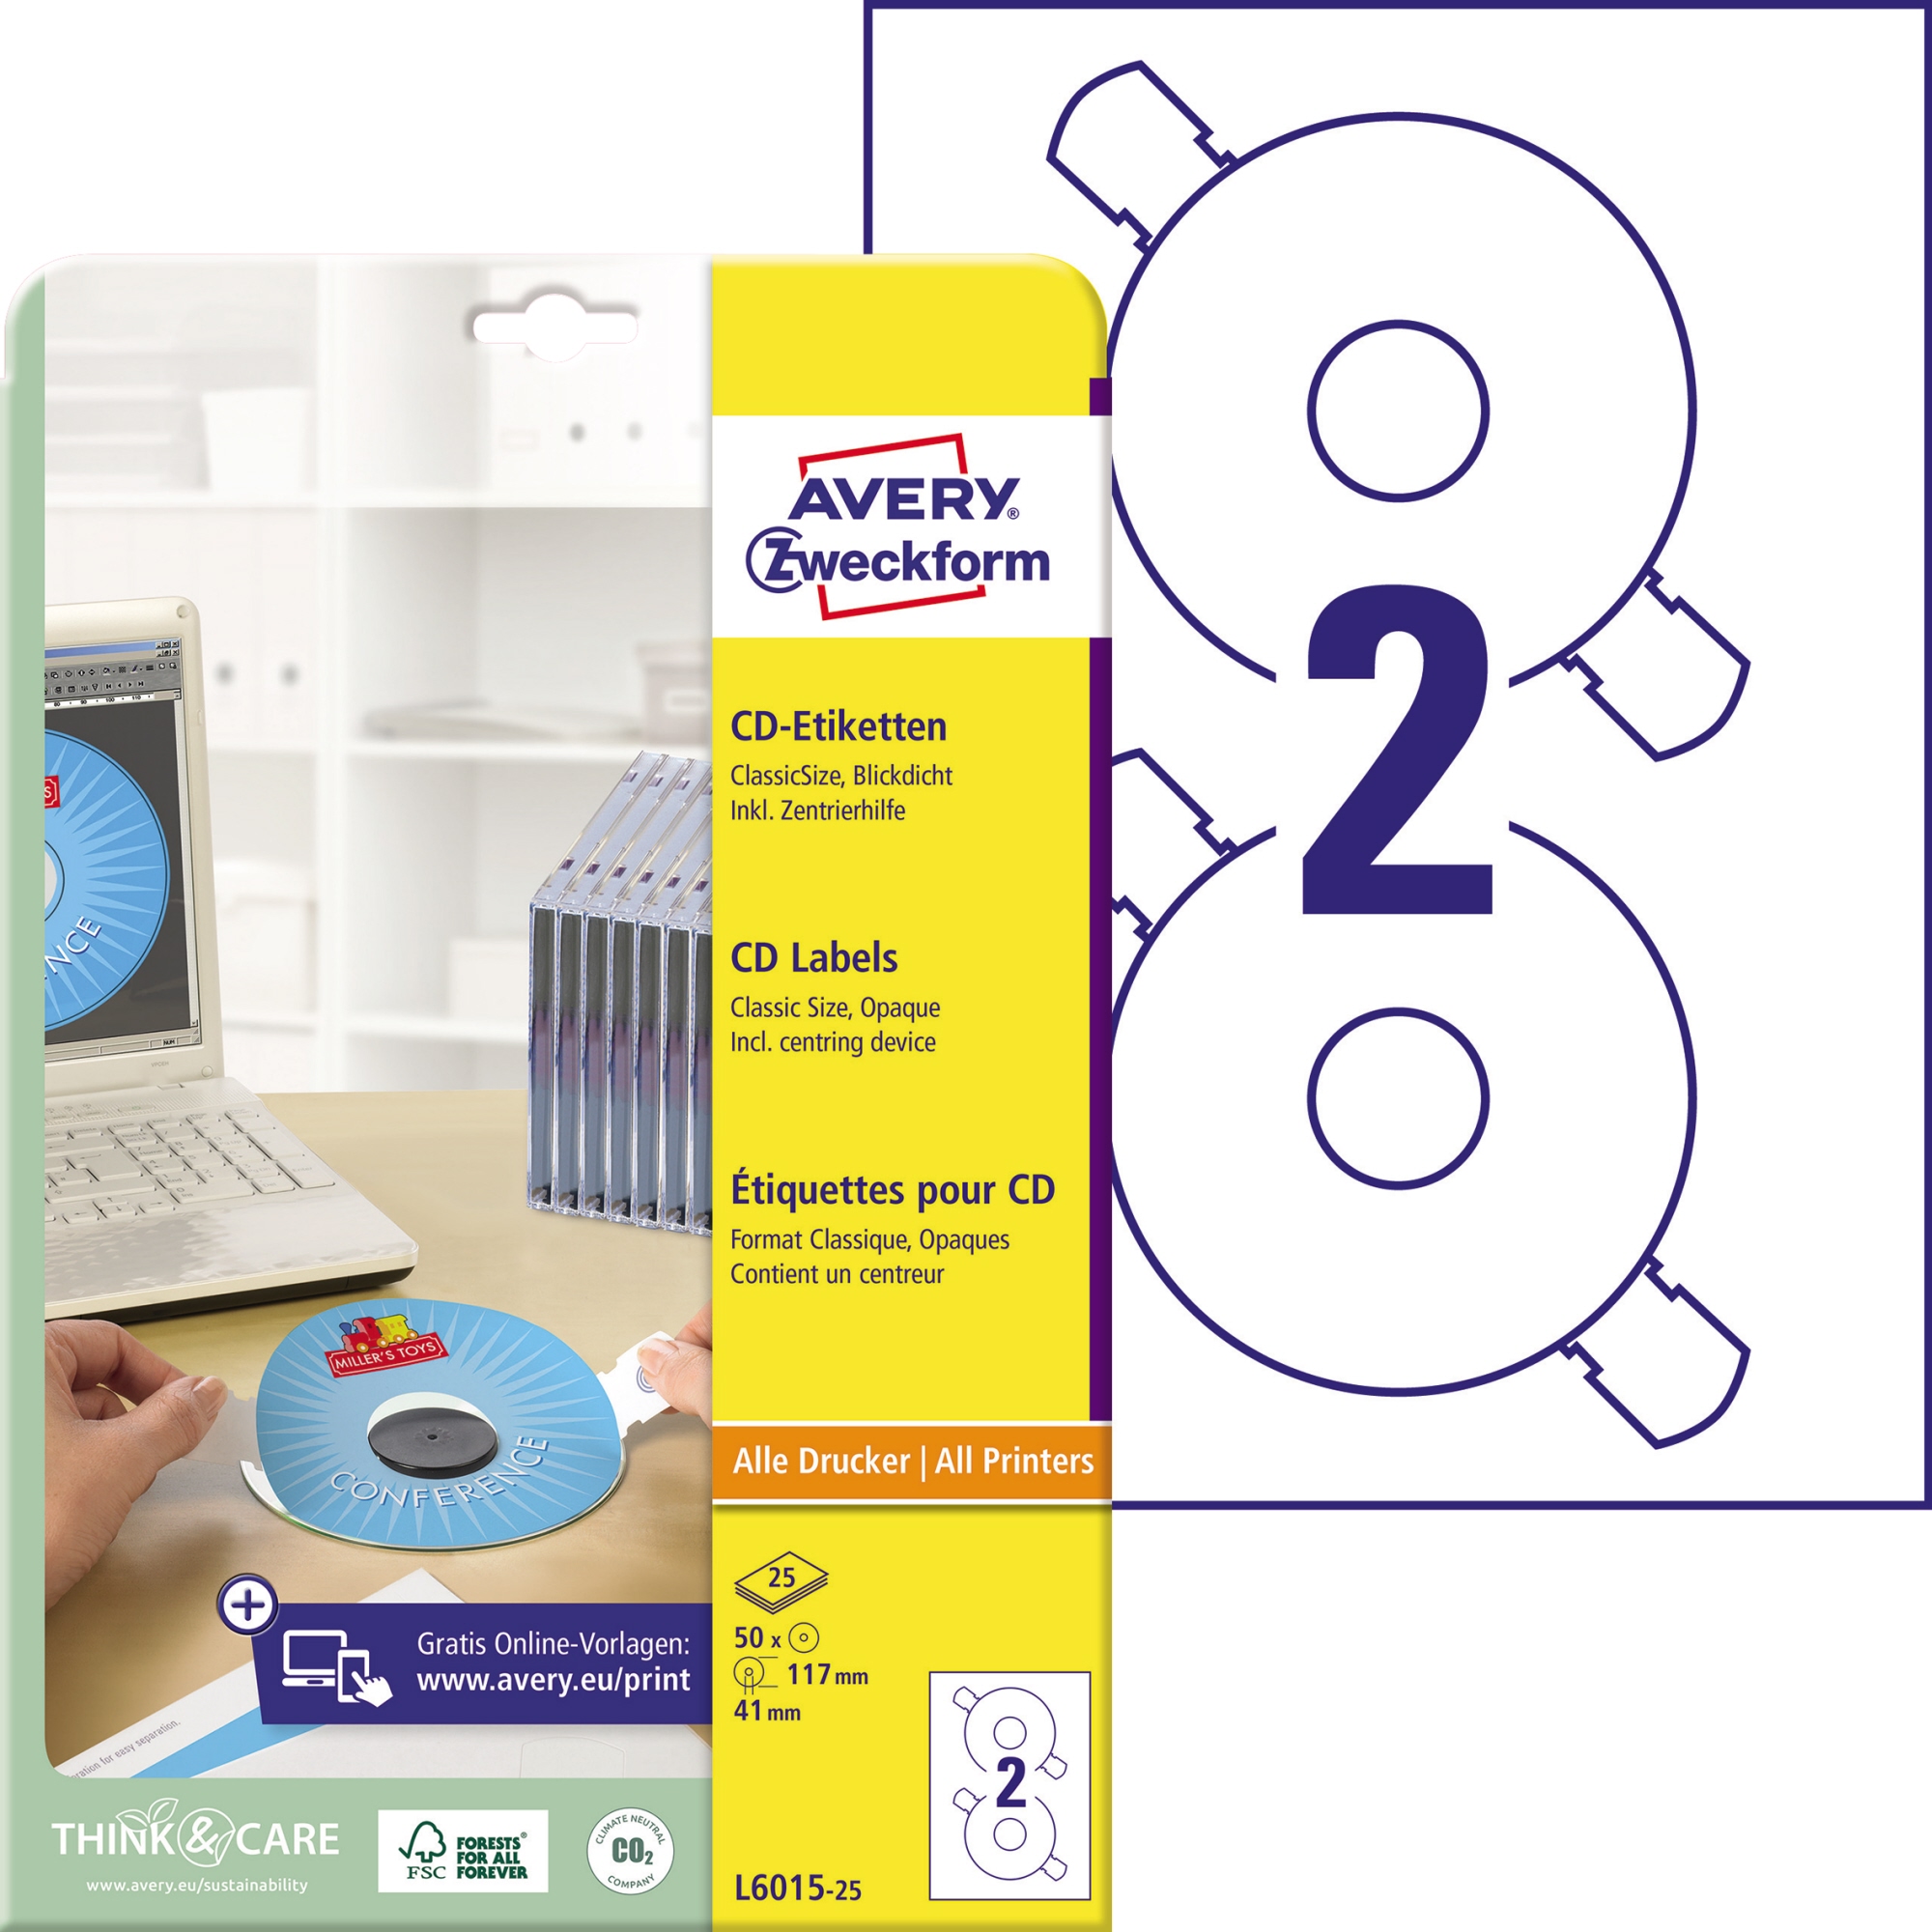 Avery Zweckform CD/DVD Etikett weiß, 117mm, matt, mit Zentrierhilfe